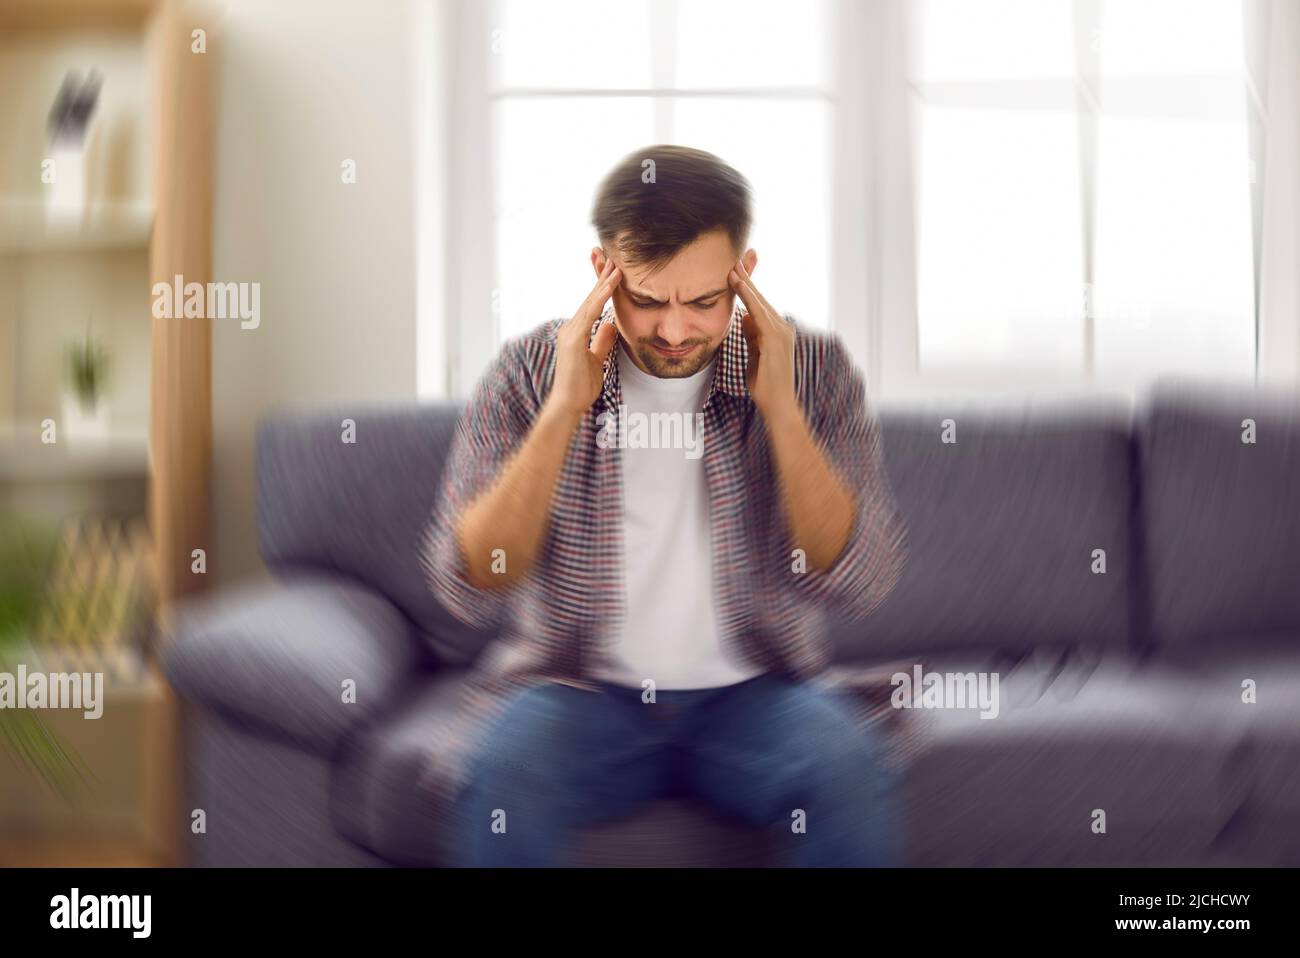 Ein junger Mann, der sich schwindlig fühlt und ein schwindeliges Schwindelgefühl hat, sitzt zu Hause auf dem Sofa Stockfoto